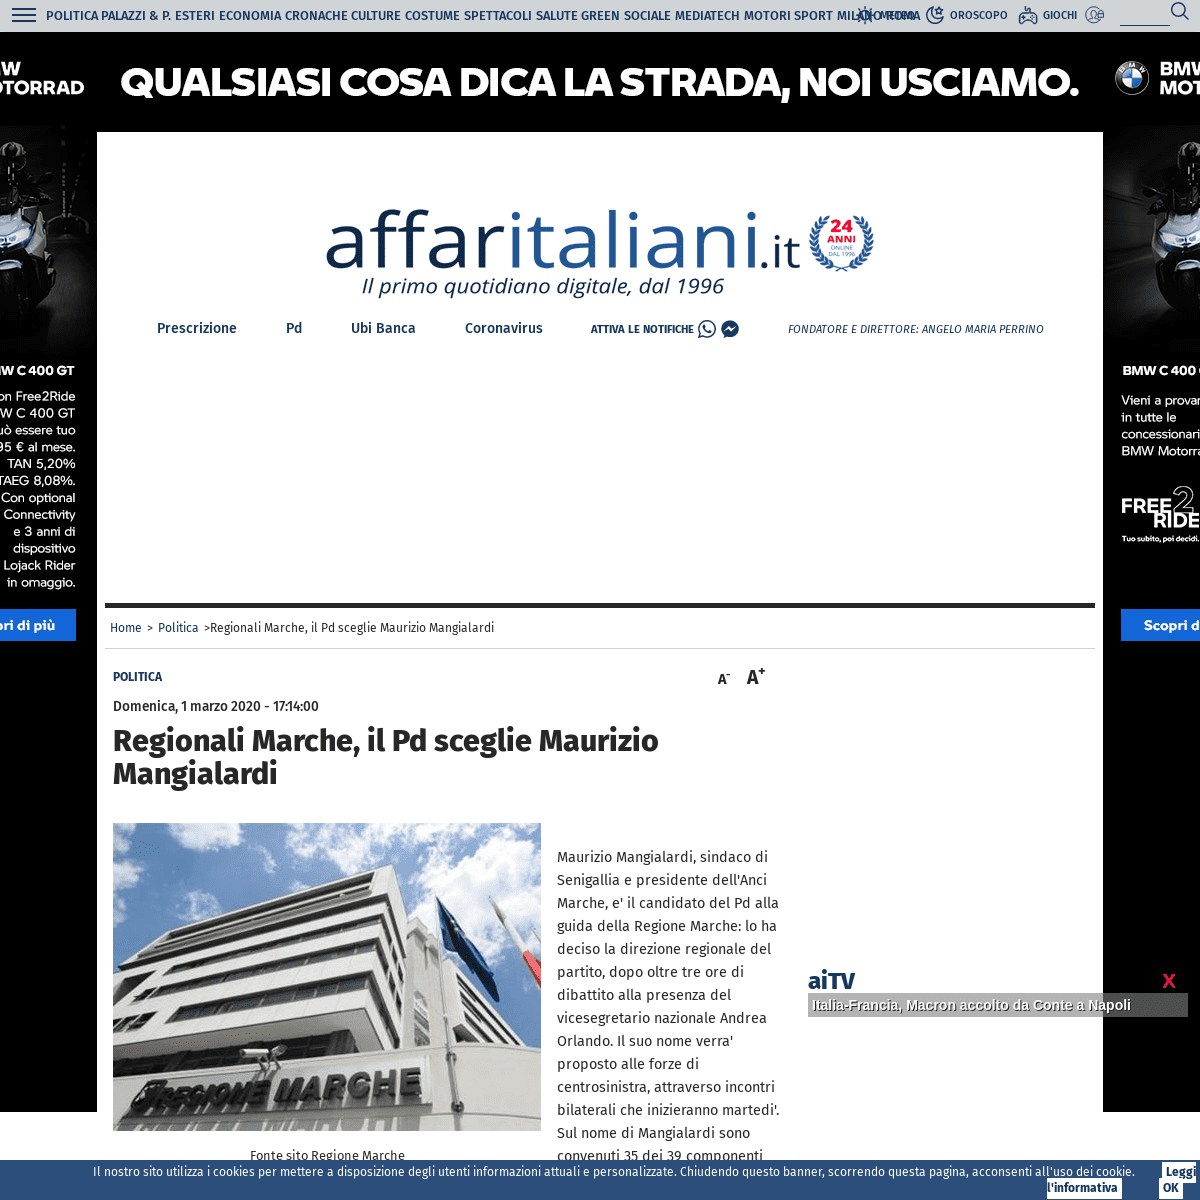 A complete backup of www.affaritaliani.it/politica/regionali-marche-il-pd-sceglie-maurizio-mangialardi-655688.html